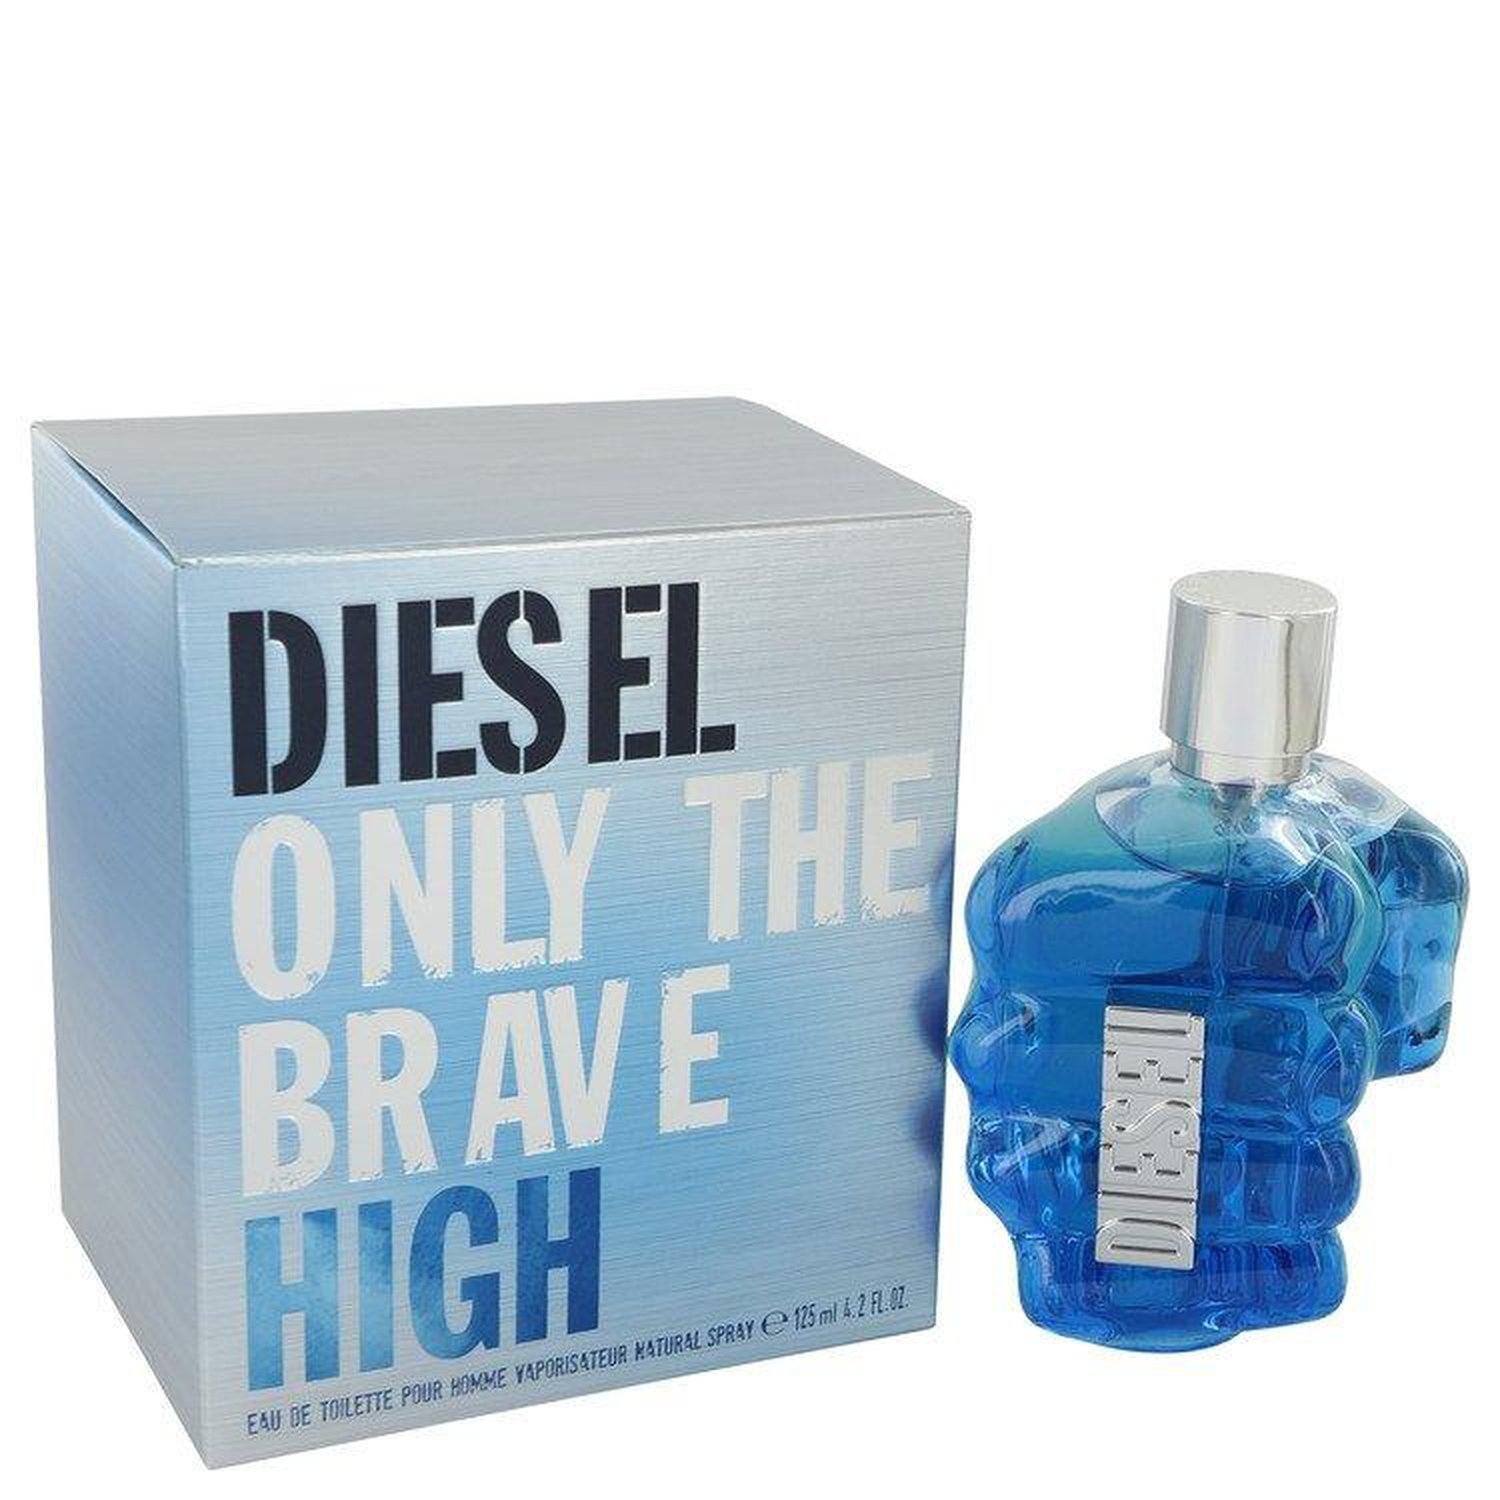 Only The Brave High by Diesel Eau De Toilette Spray (Men) 4.2 oz